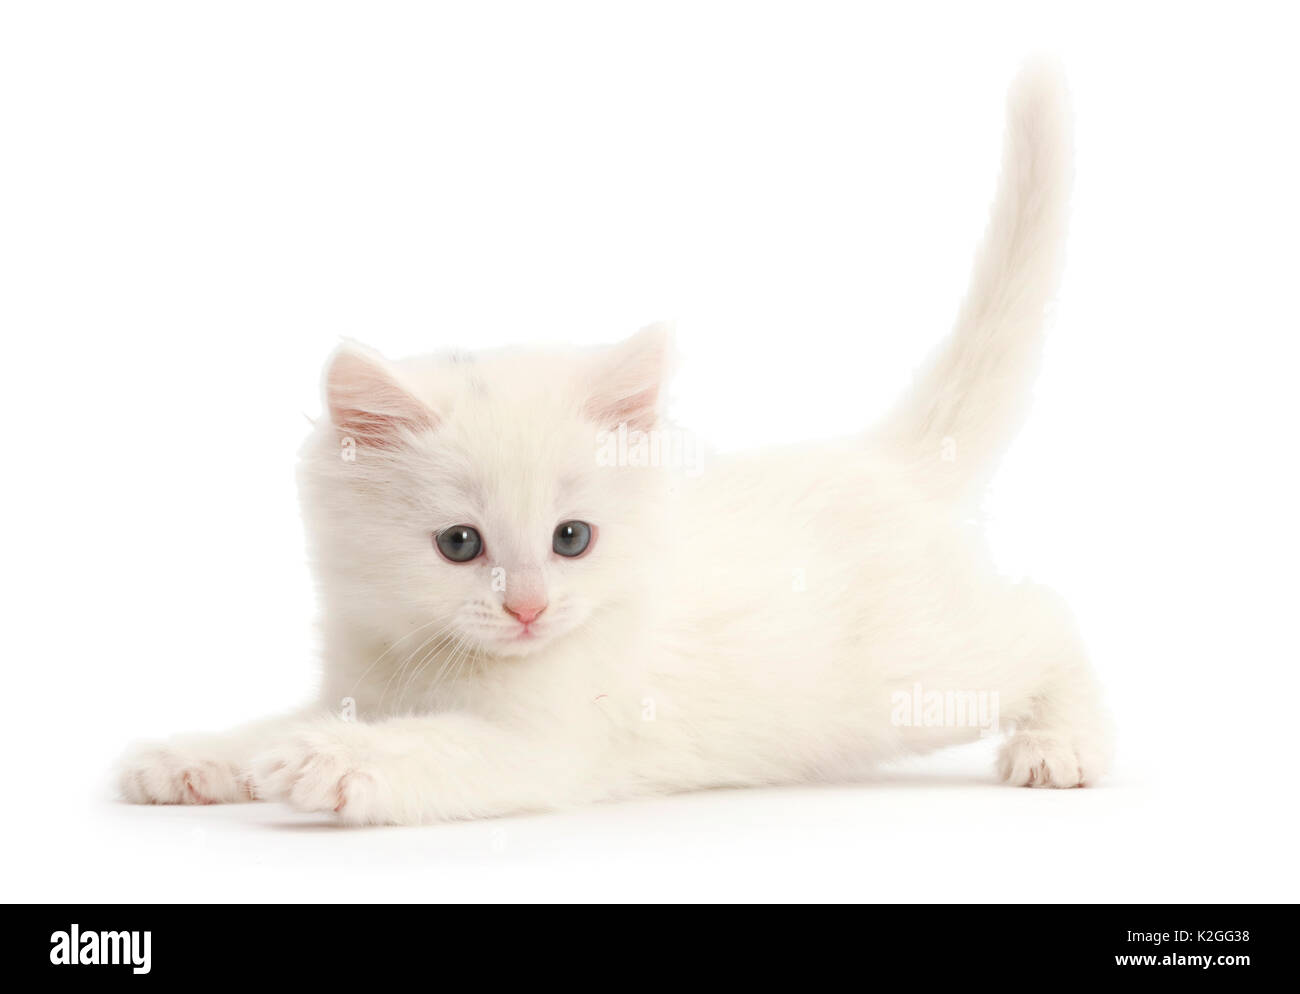 Playful white kitten. Stock Photo